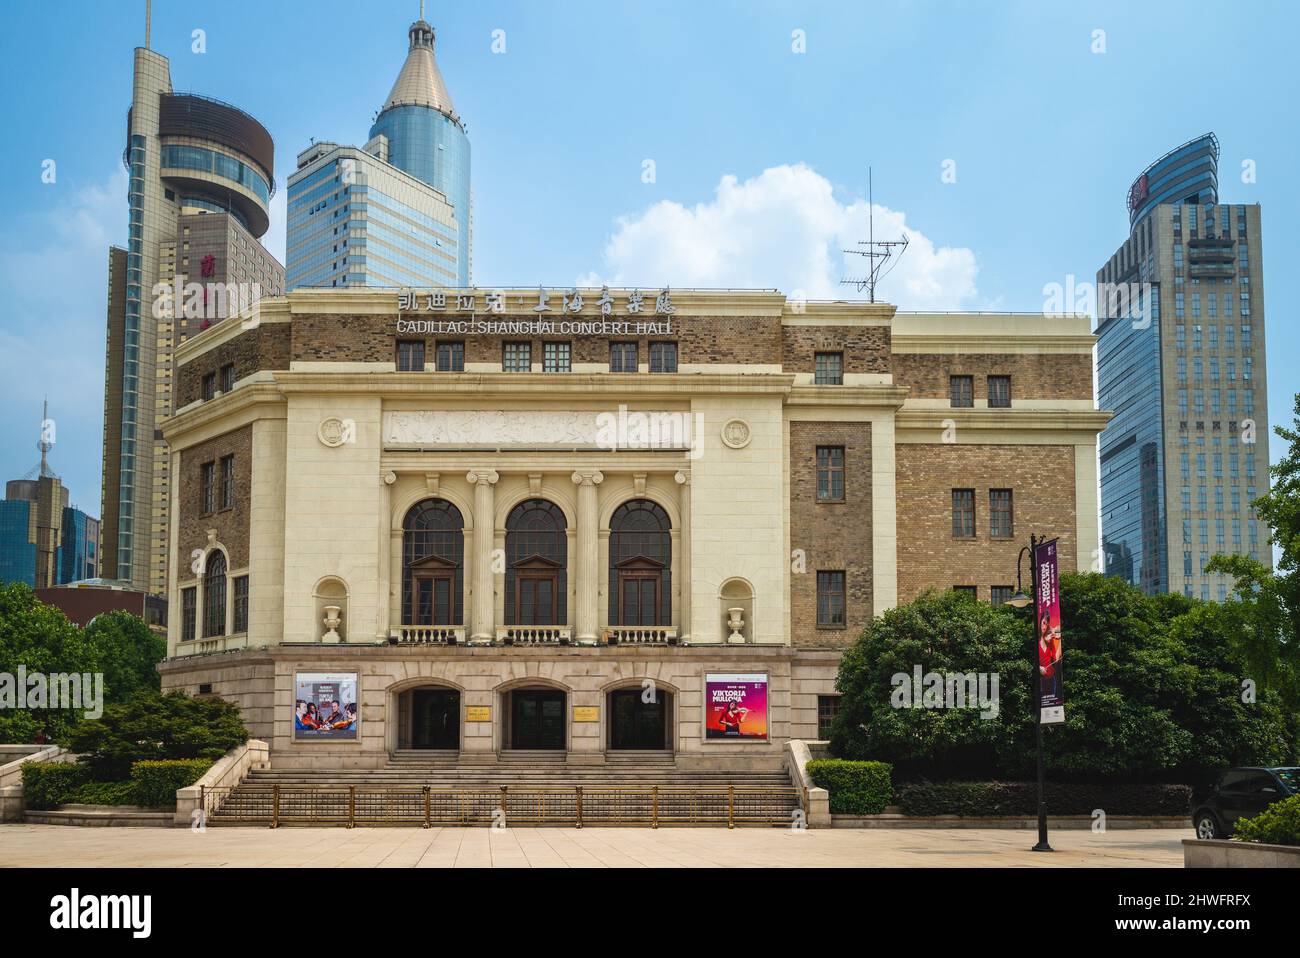 27 juillet 2018 : salle de concert Cadillac shanghai située dans le district de Huangpu, Shanghai, Chine, fondée en 1930 sous le nom de Nanjing Drama Hall, rebaptisée Pékin Banque D'Images